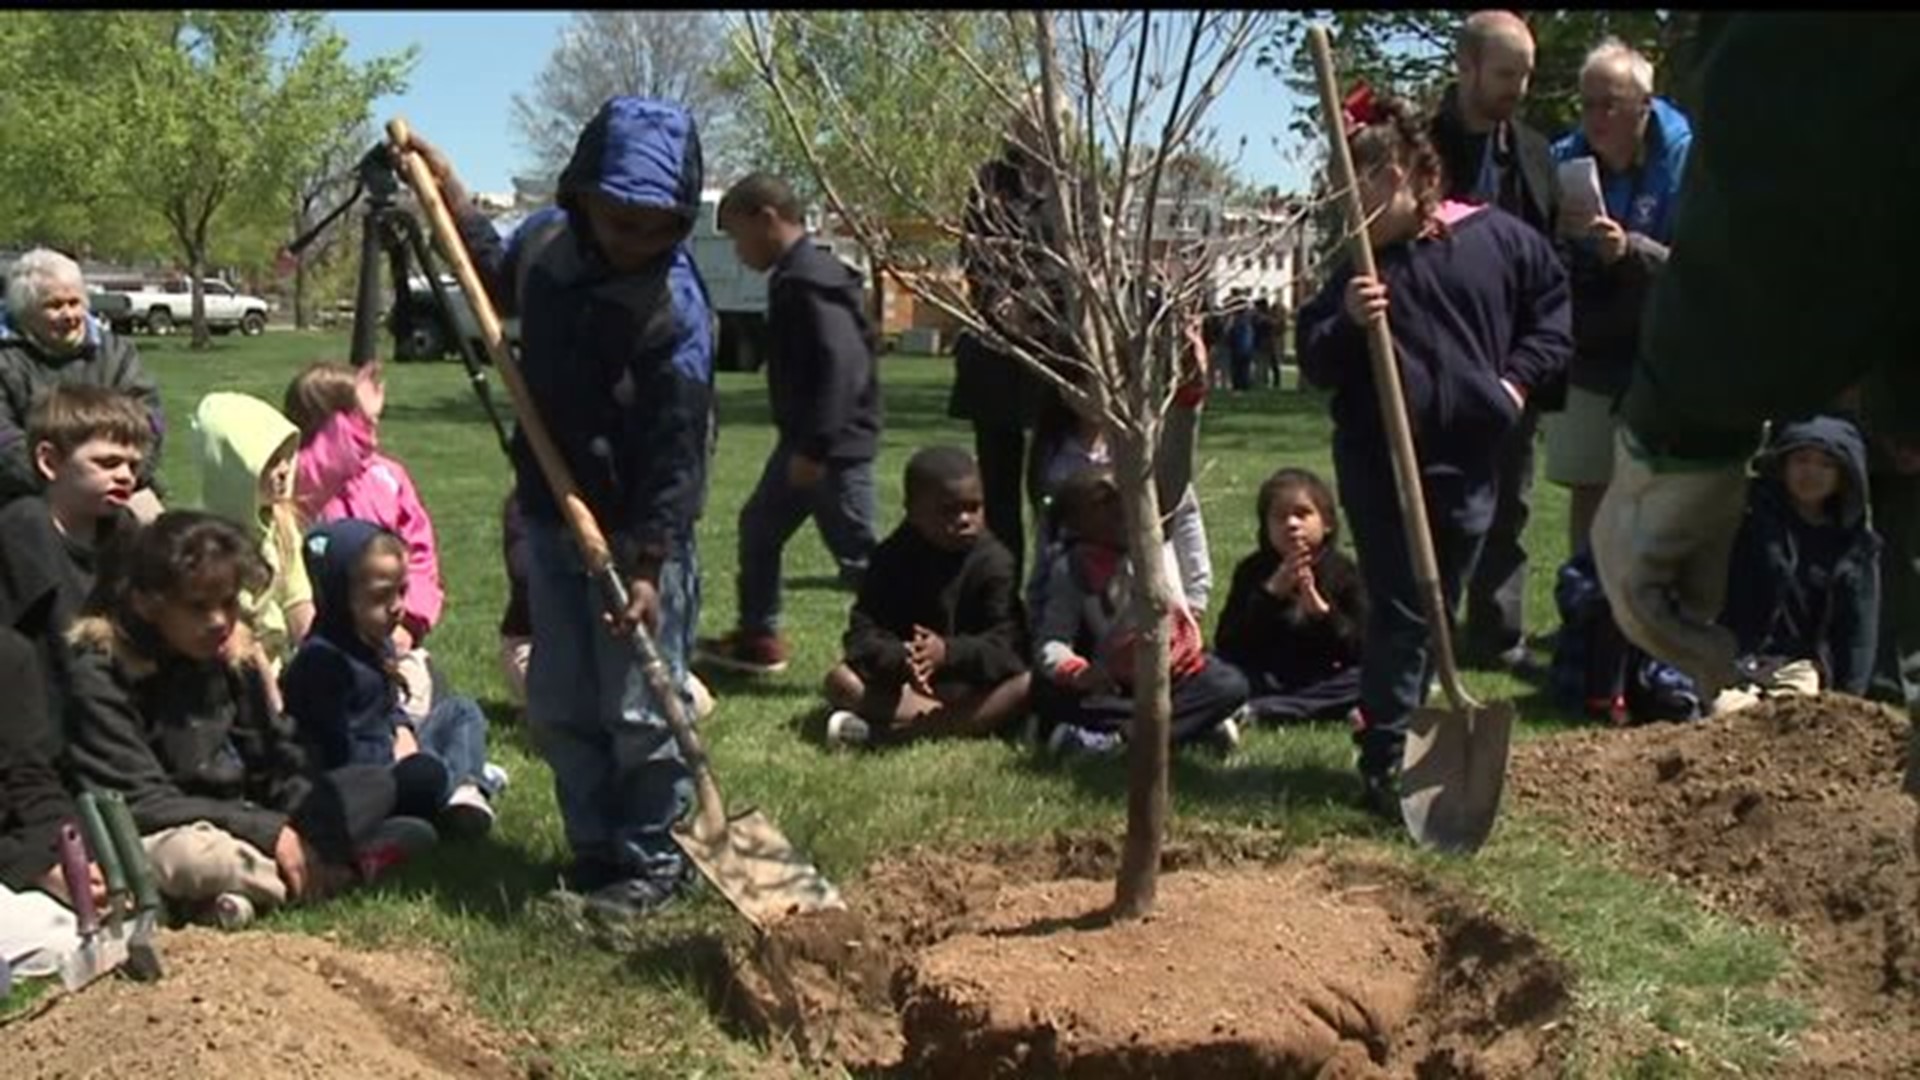 York City celebrates Arbor Day